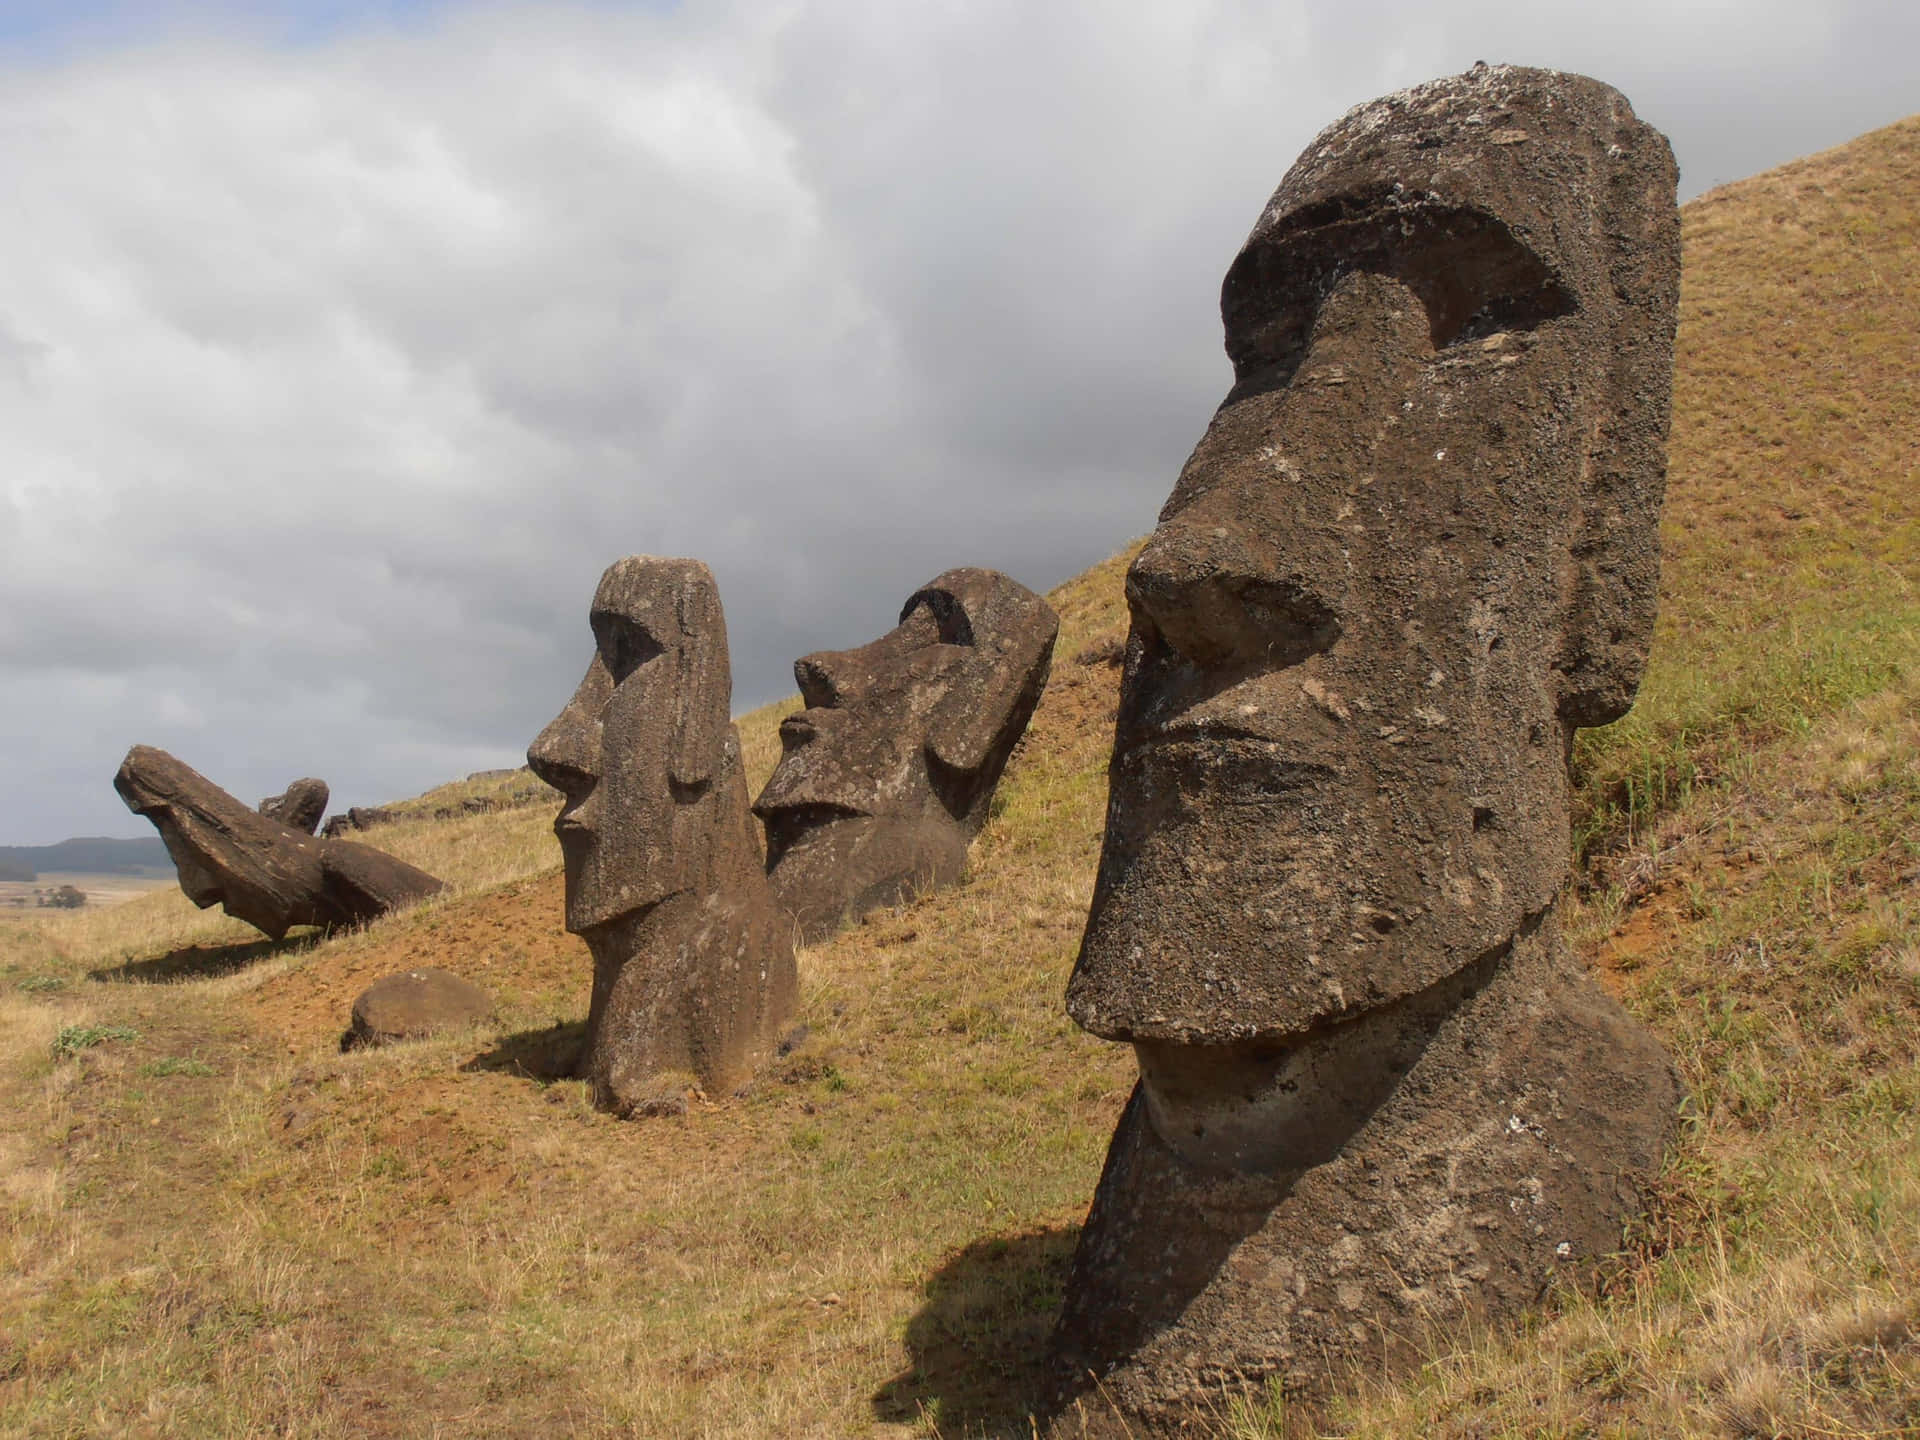 Moaihuvudfigurer Nära Rano Raraku. Wallpaper